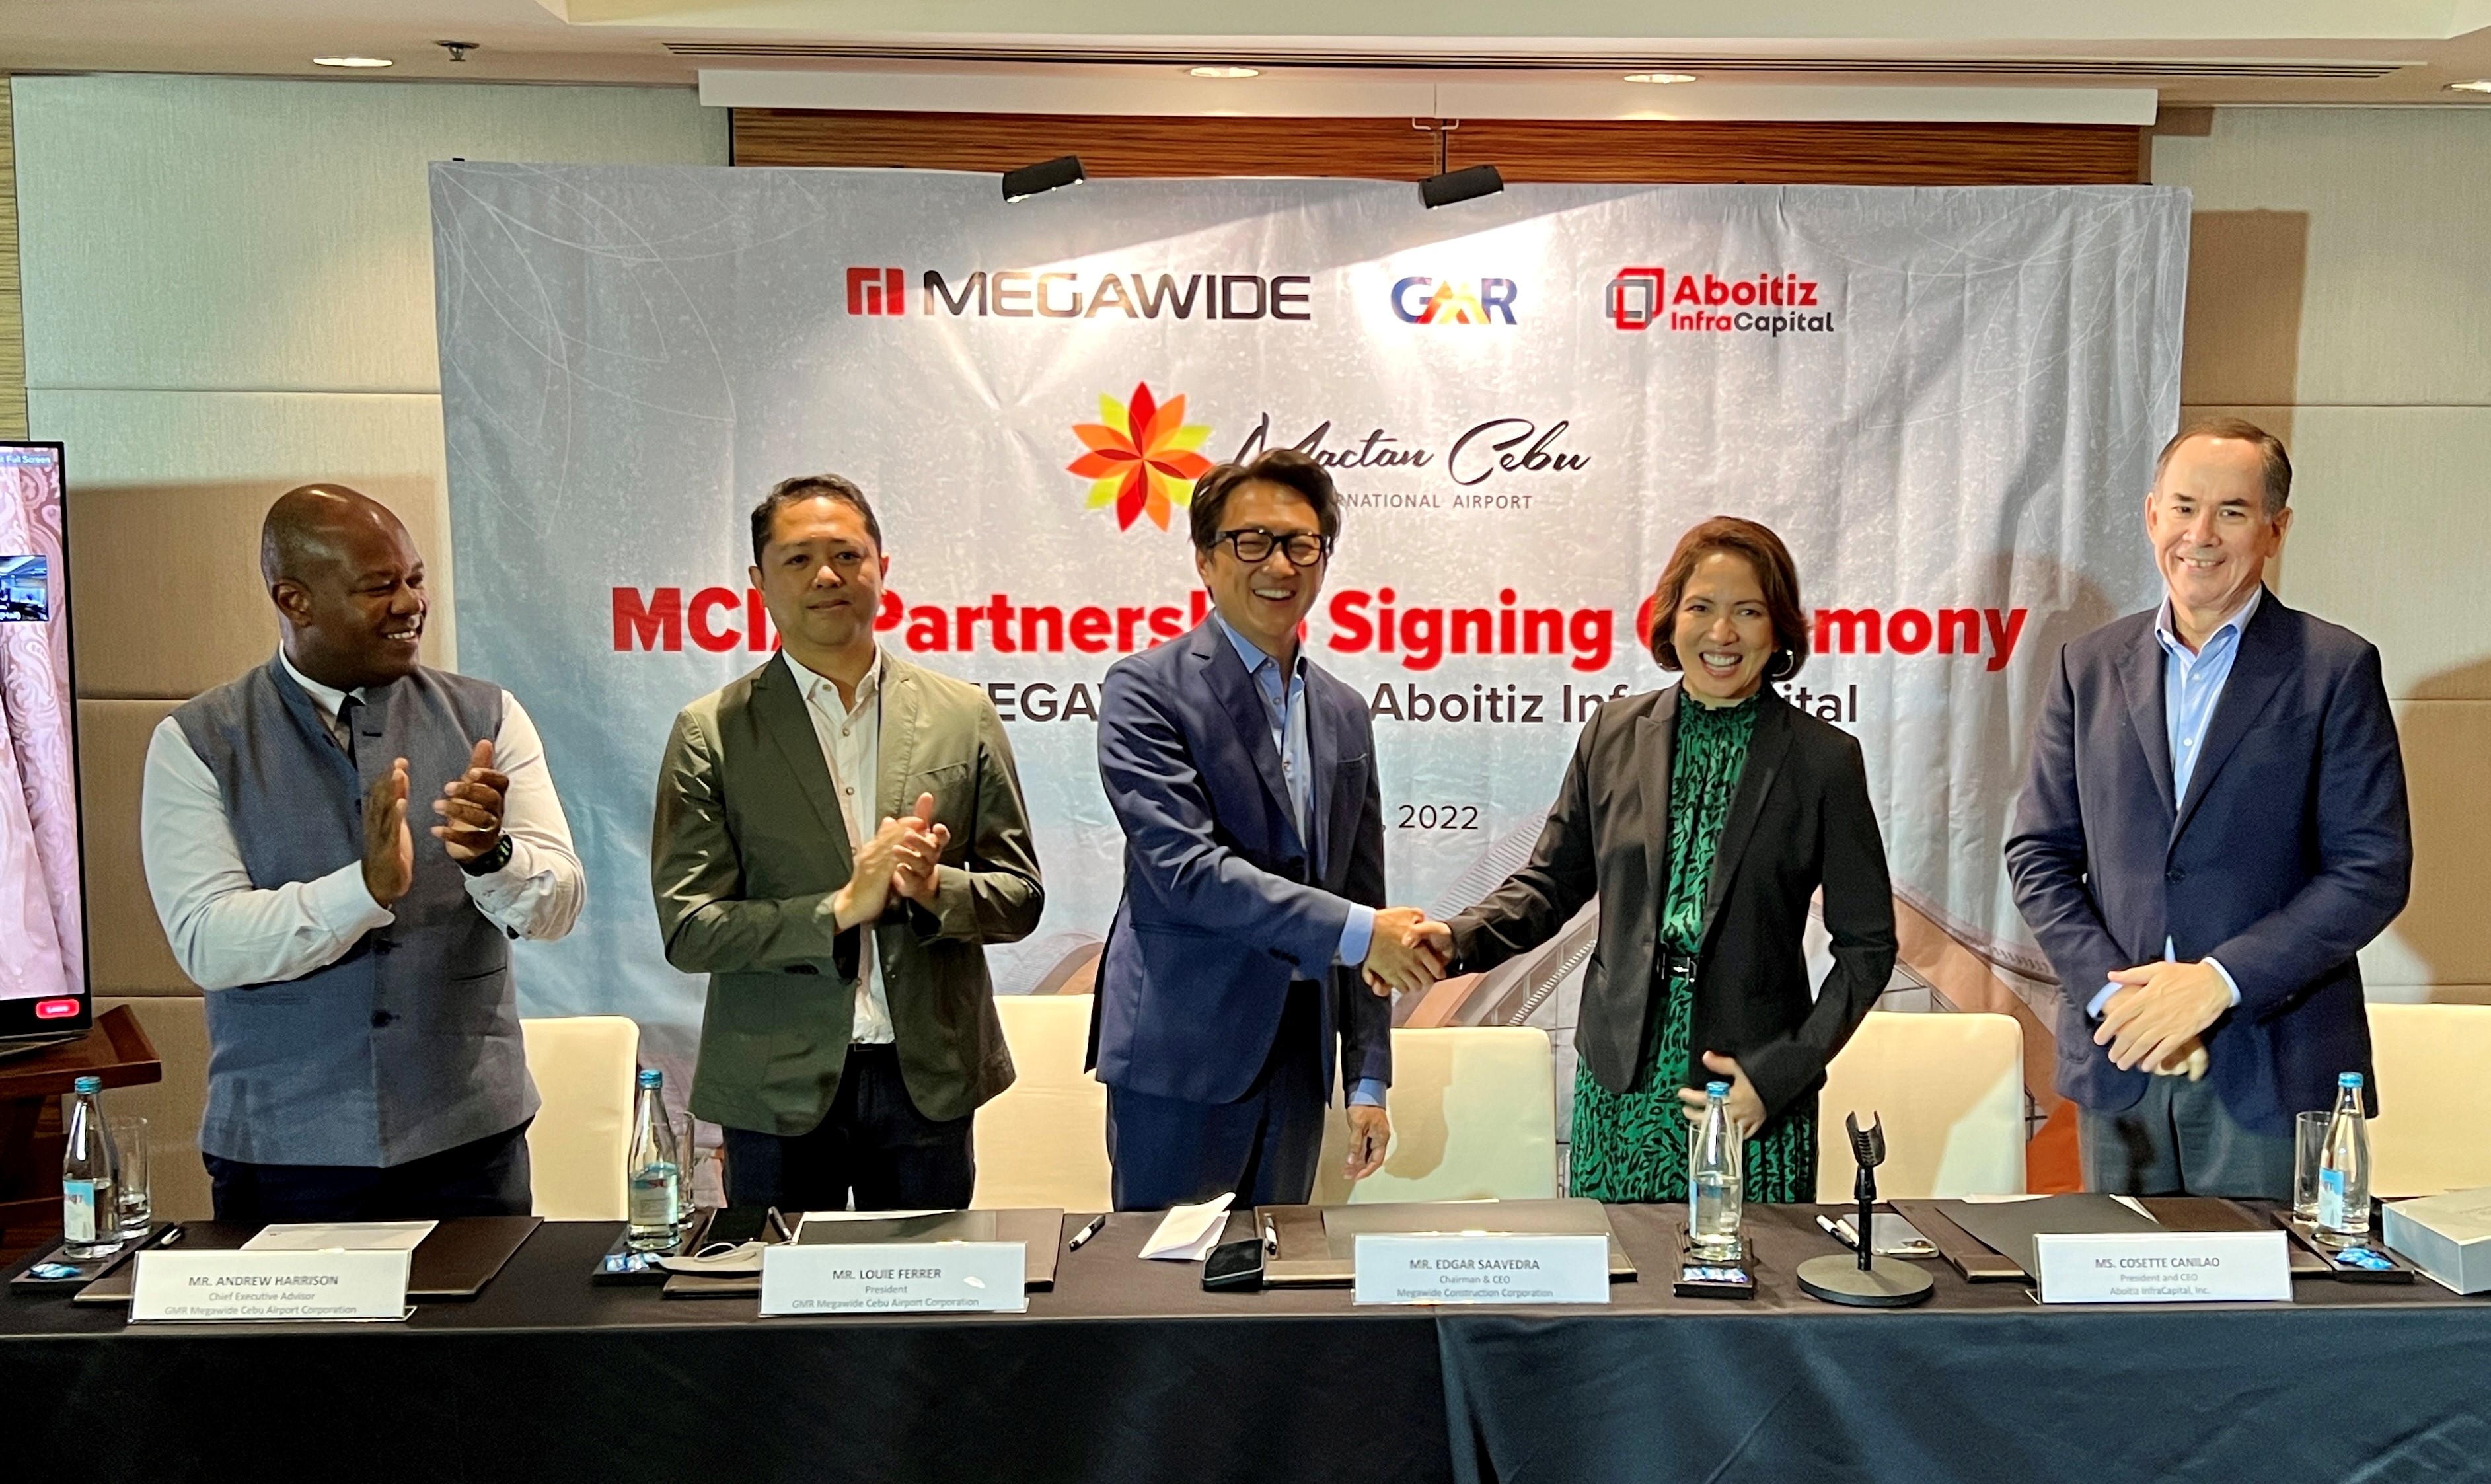 Aboitiz InfraCapital, GMR and Megawide signing ceremony